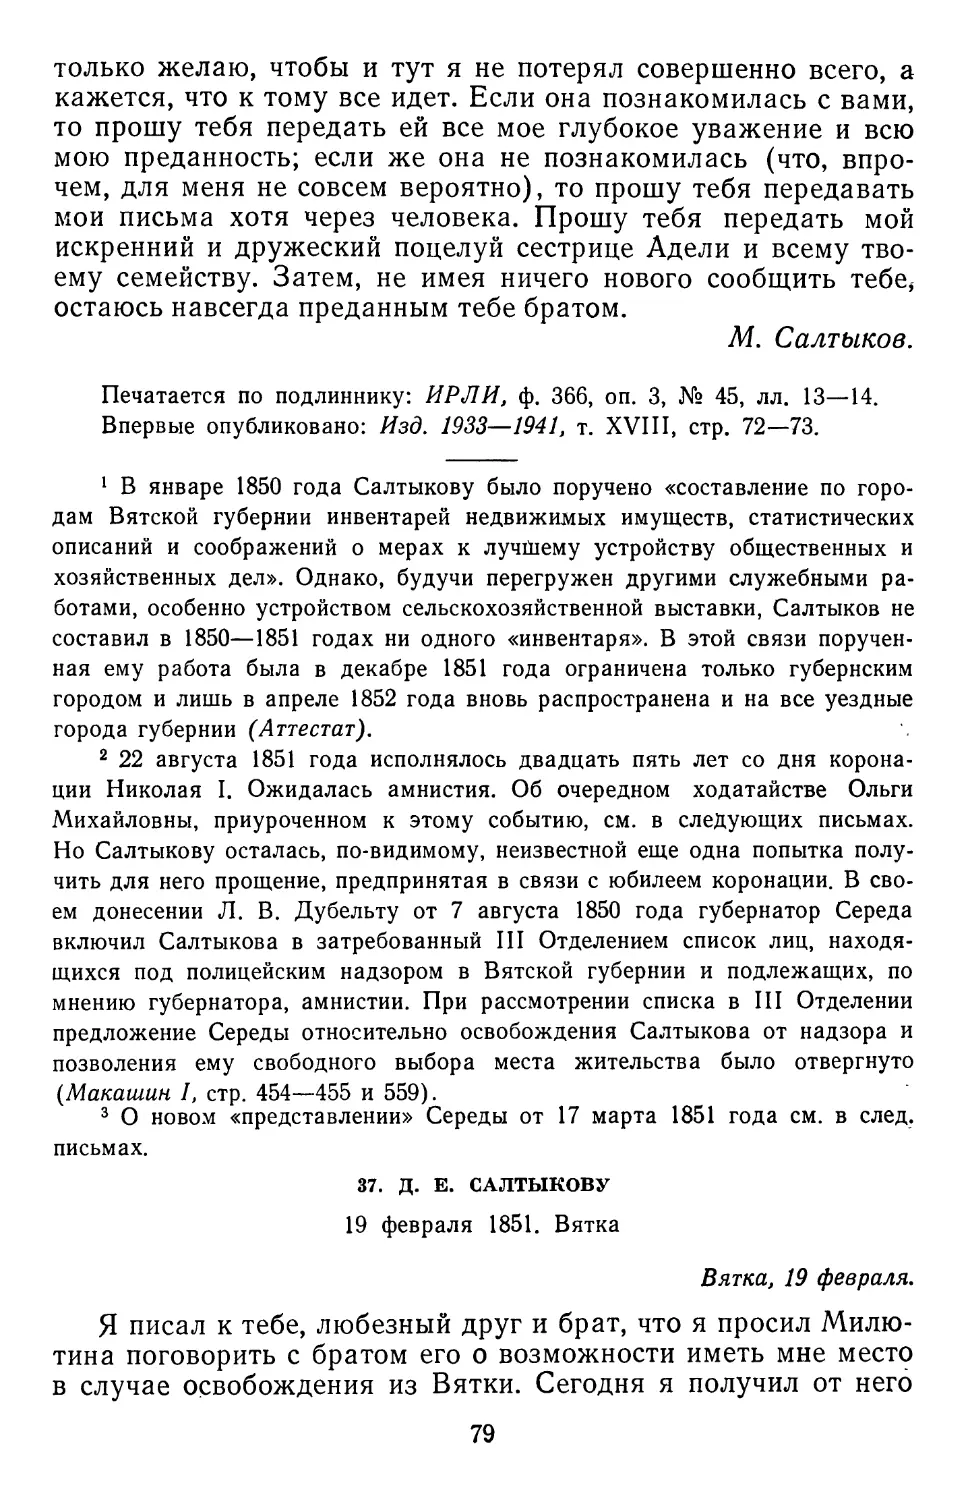 37.Д. Е. Салтыкову. 19 февраля 1851.Вятка